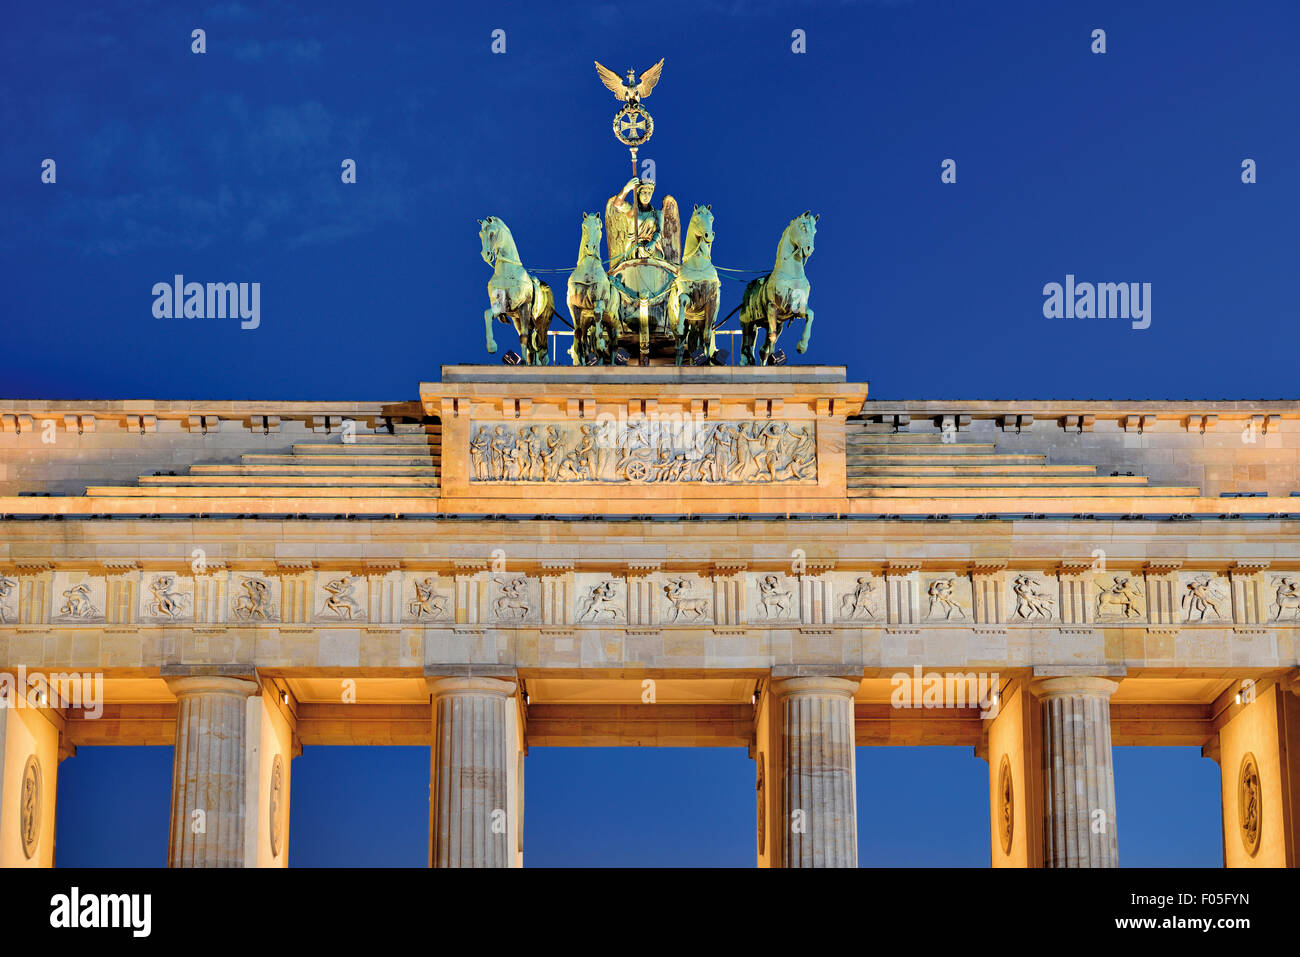 Alemania, Berlín: Parte superior de la Puerta de Brandenburgo de noche Foto de stock